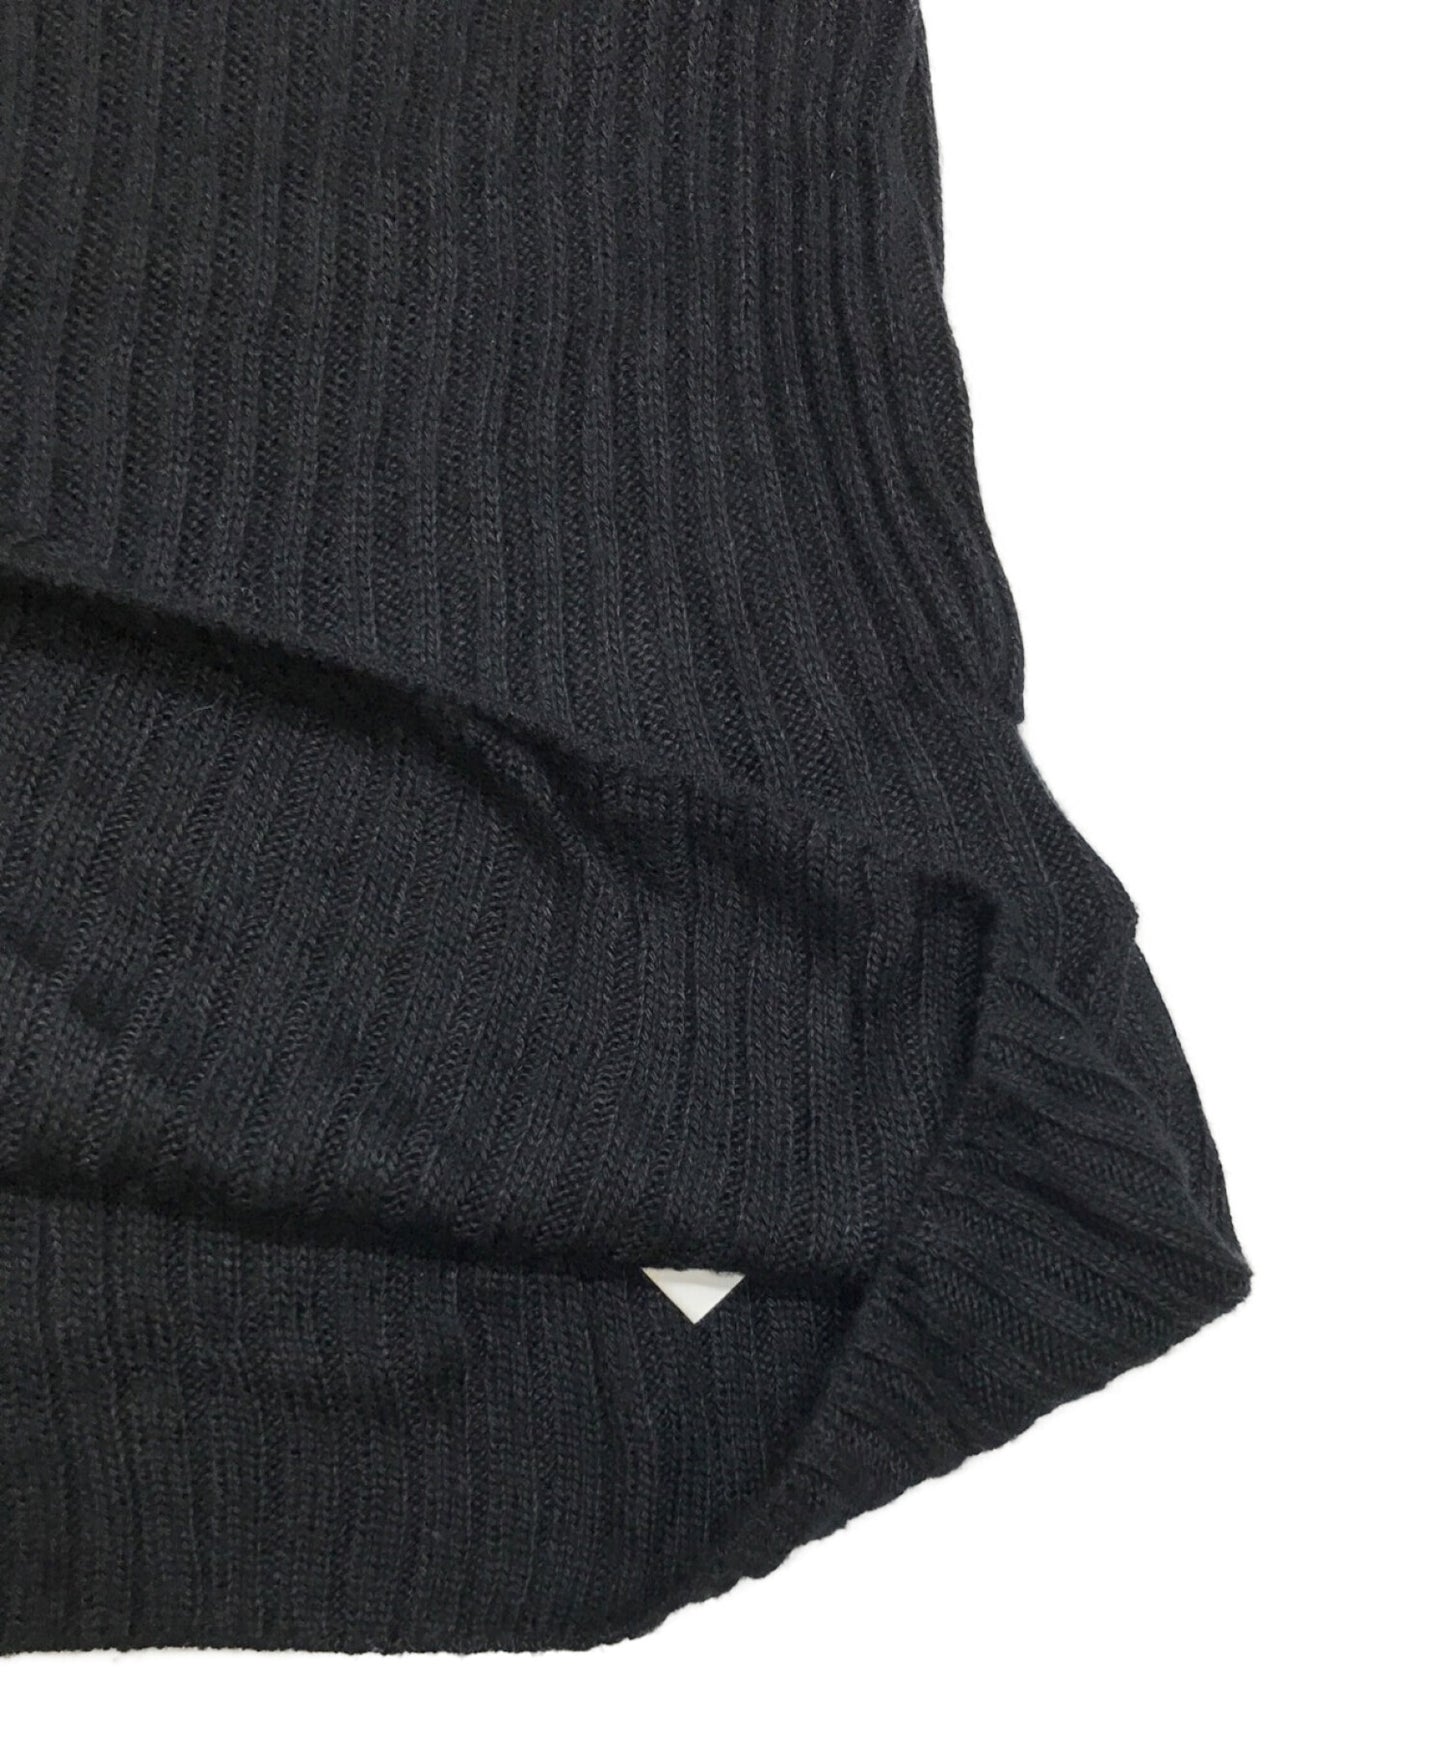 RAGNE KIKAS for Yohji Yamamoto Rayon silk high neck knit NK-K34-271